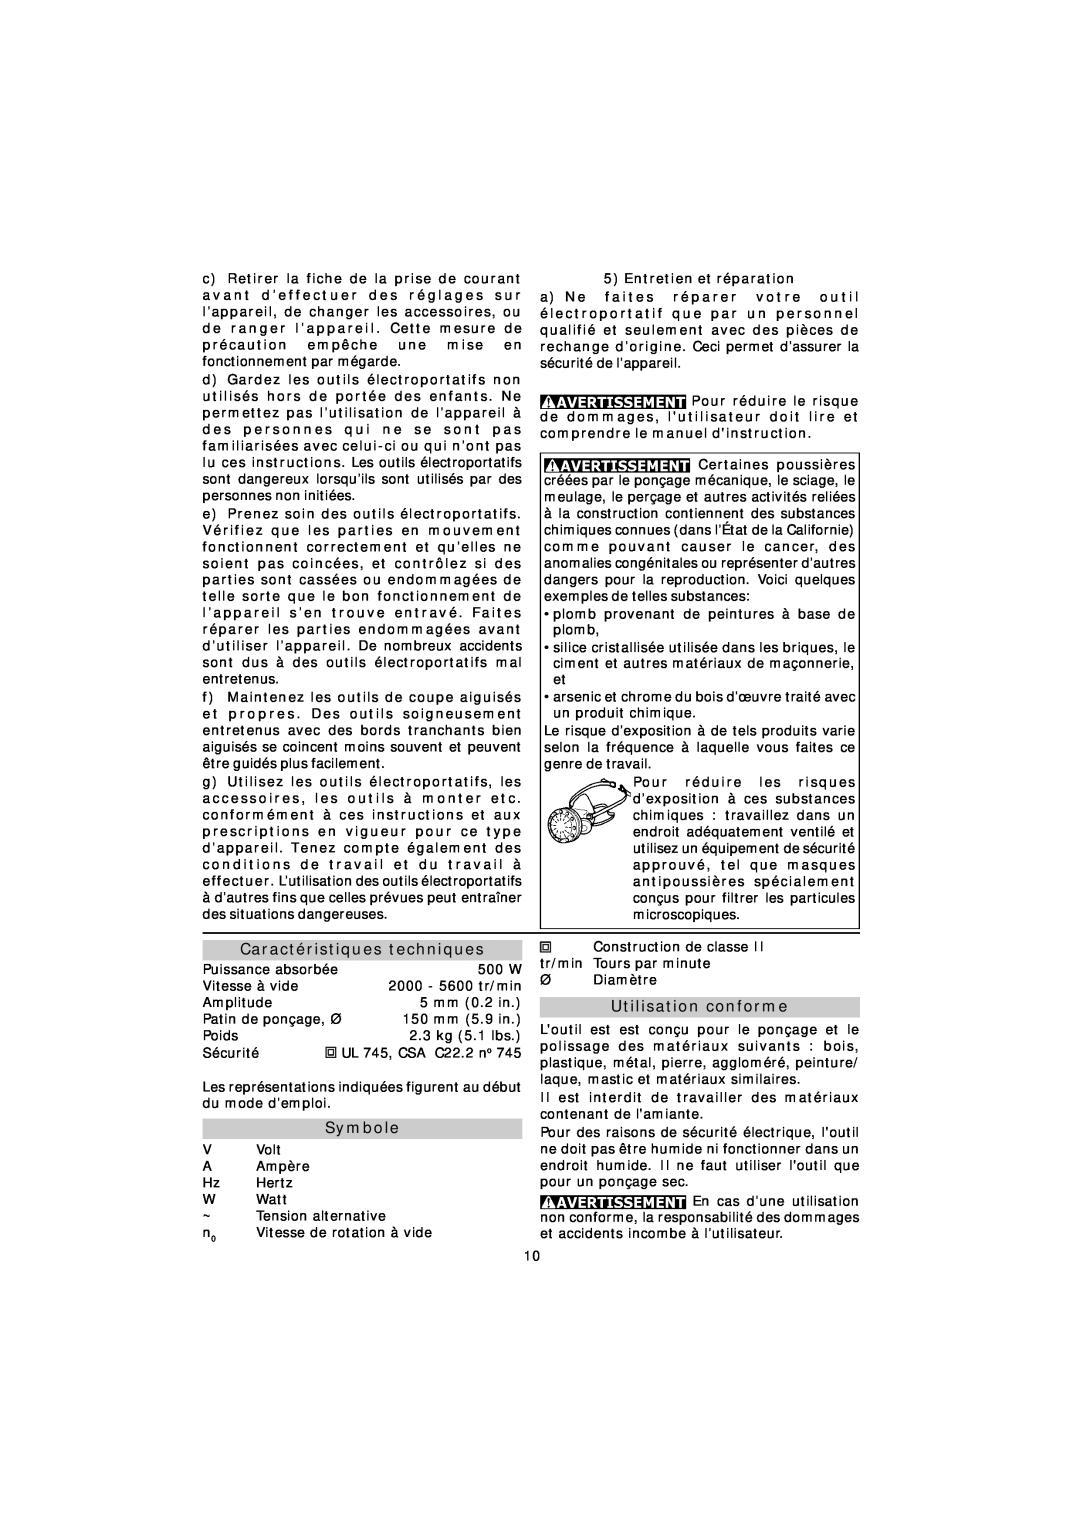 Festool RO 150 E instruction manual Caractéristiques techniques, Symbole, Utilisation conforme 